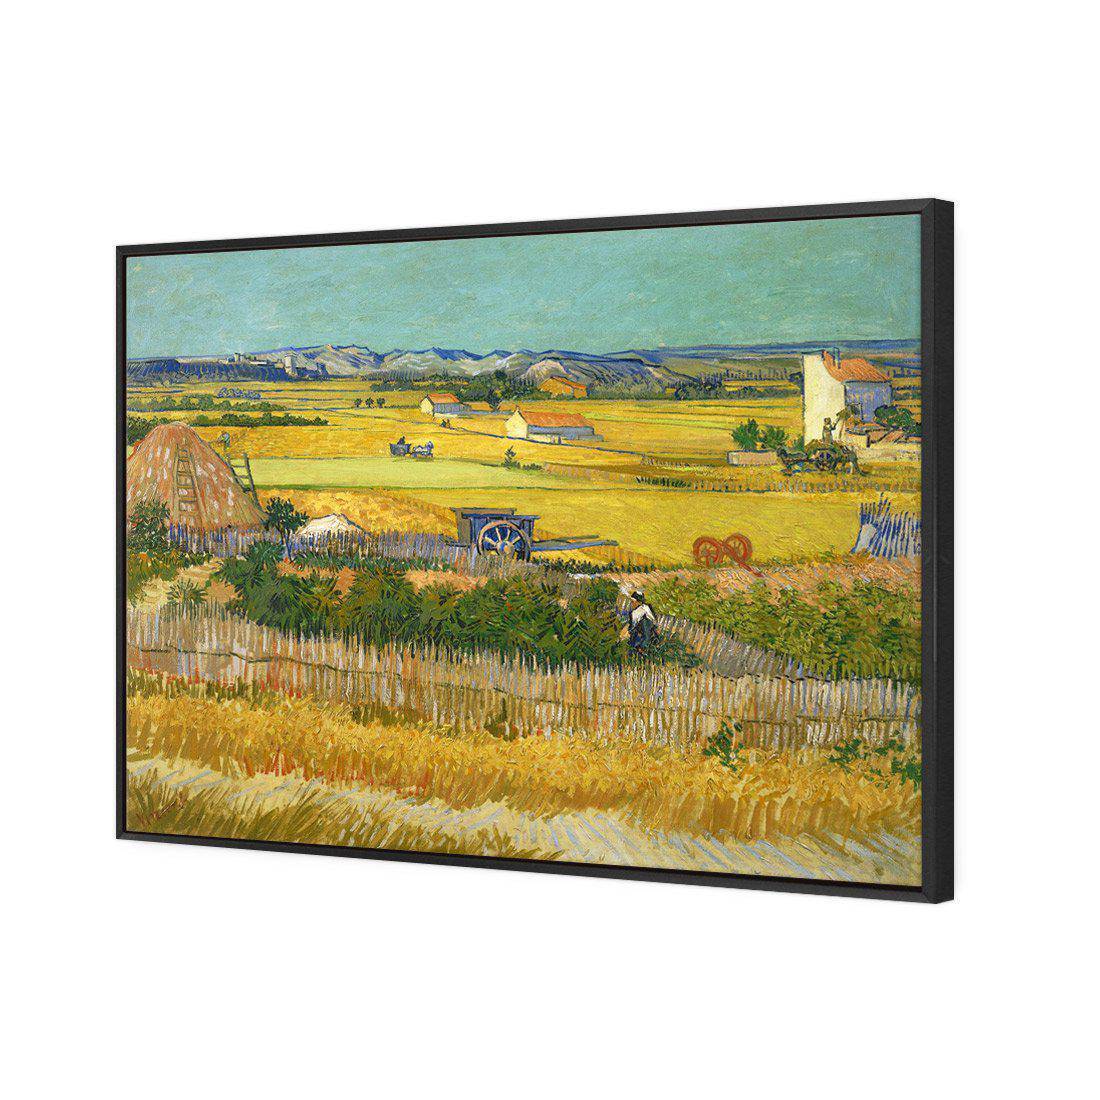 Harvest - Van Gogh Canvas Art-Canvas-Wall Art Designs-45x30cm-Canvas - Black Frame-Wall Art Designs